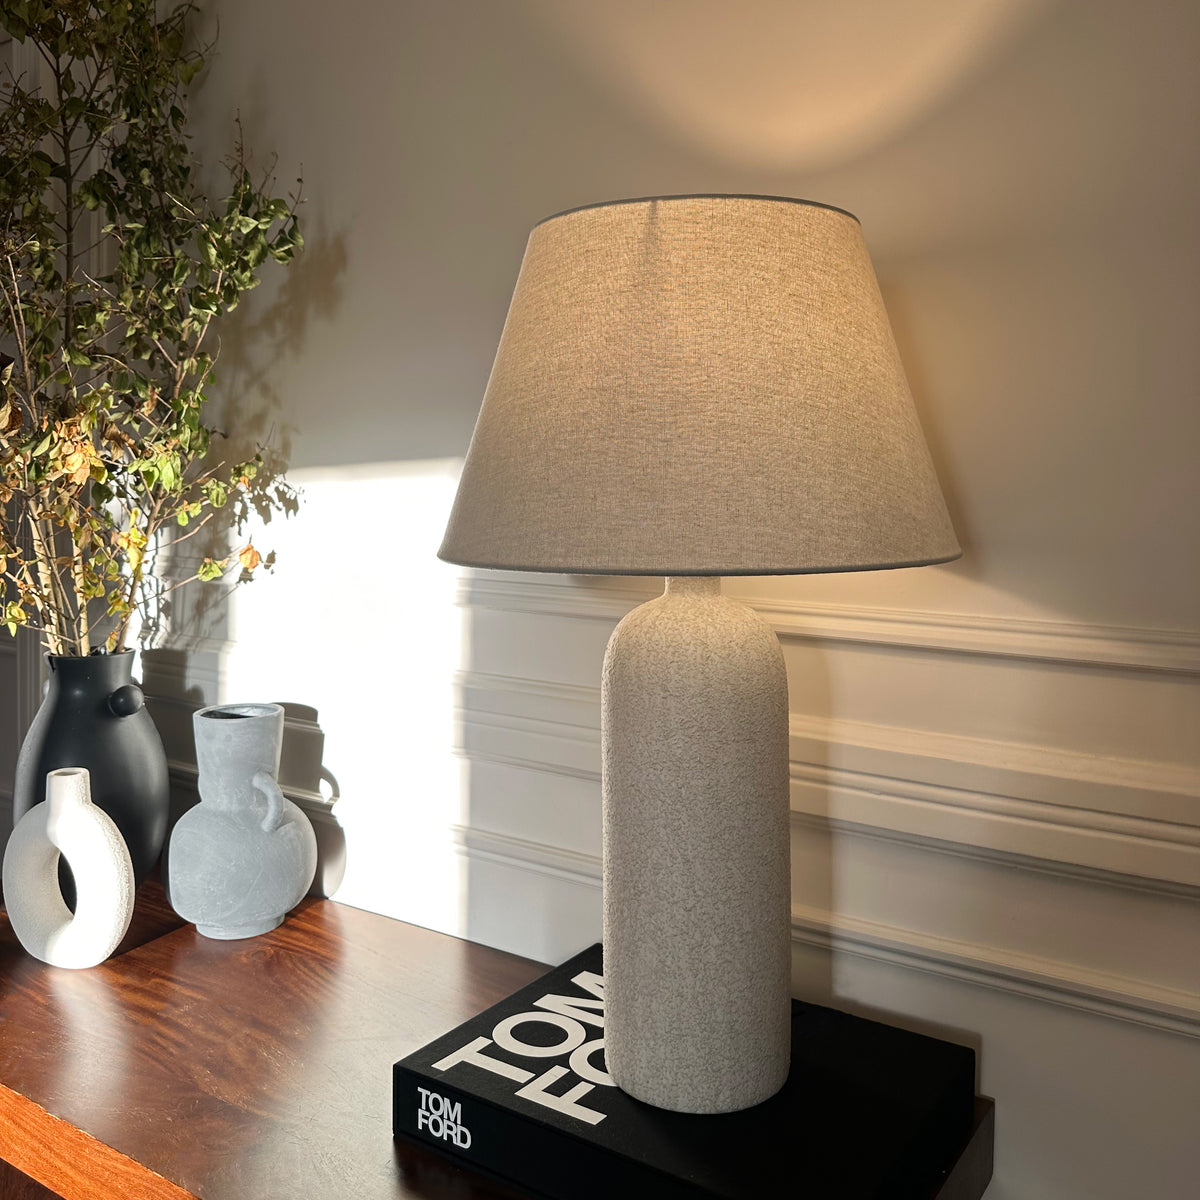 Palmaria - Textured Ceramic Based Table Lamp Natural Shade